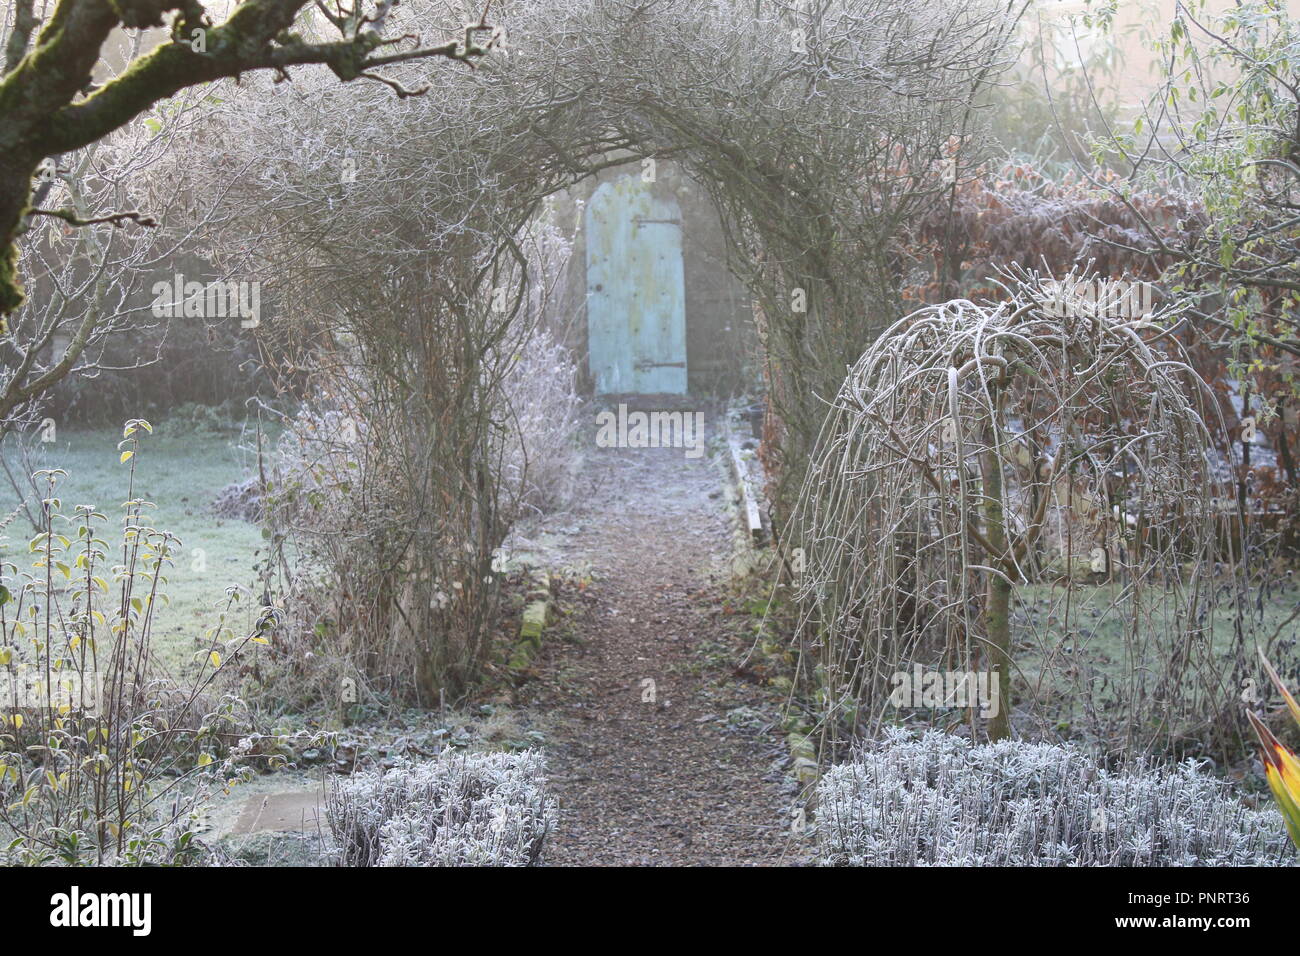 Landschaft im Winter gefroren Englisch Country Garden frost weiß Gras, Spalier Pear Tree, Pflanzen, Töpfe & Rose arch Kies weg in die geheime Tür Stockfoto